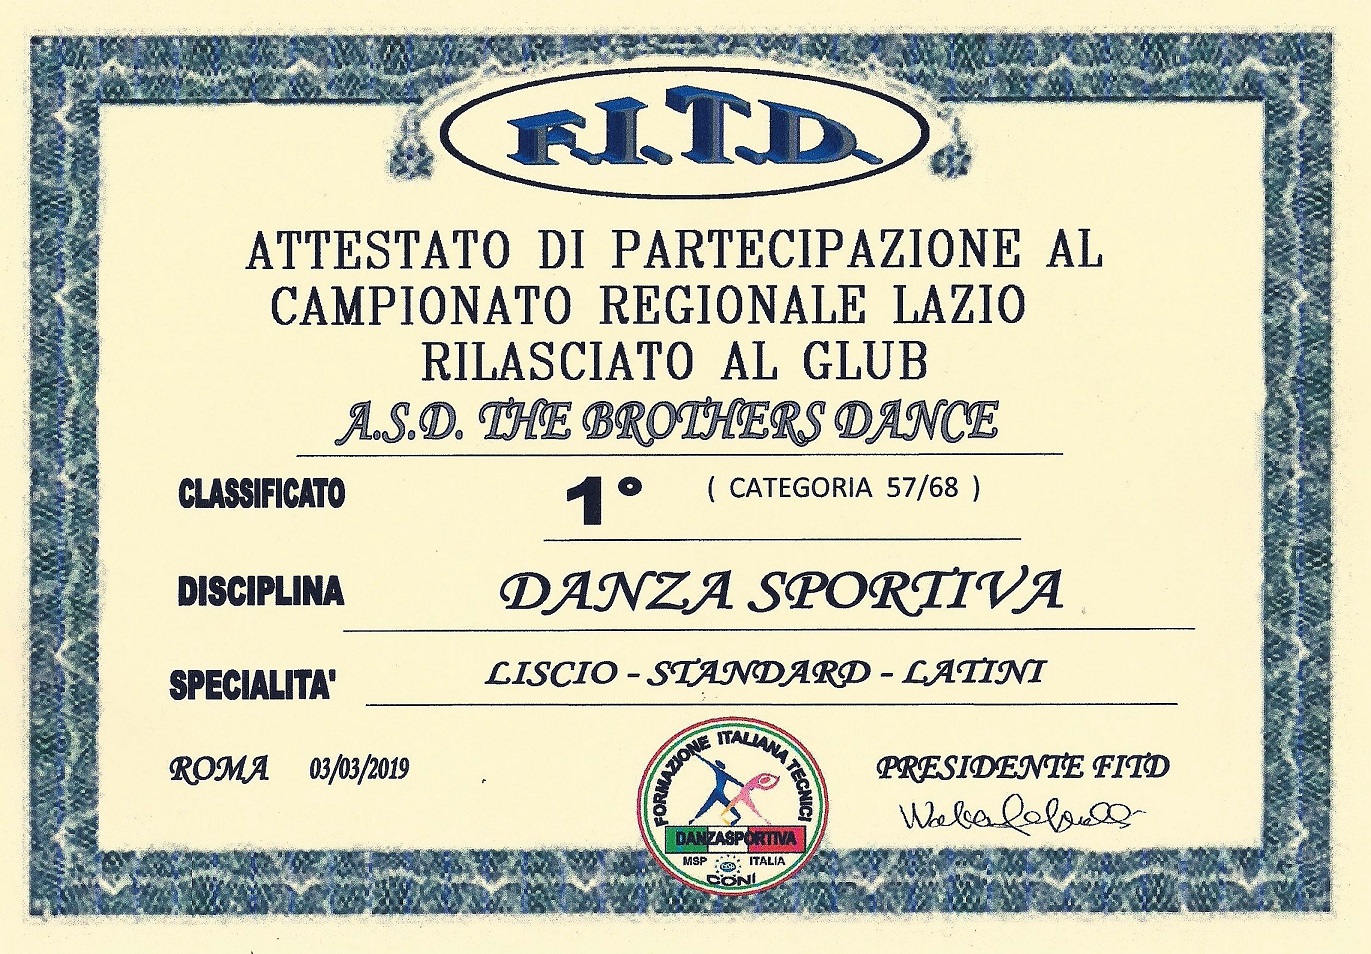 Attestato_FITD_Camp_Region_3_3_2019_F01_RT_RD